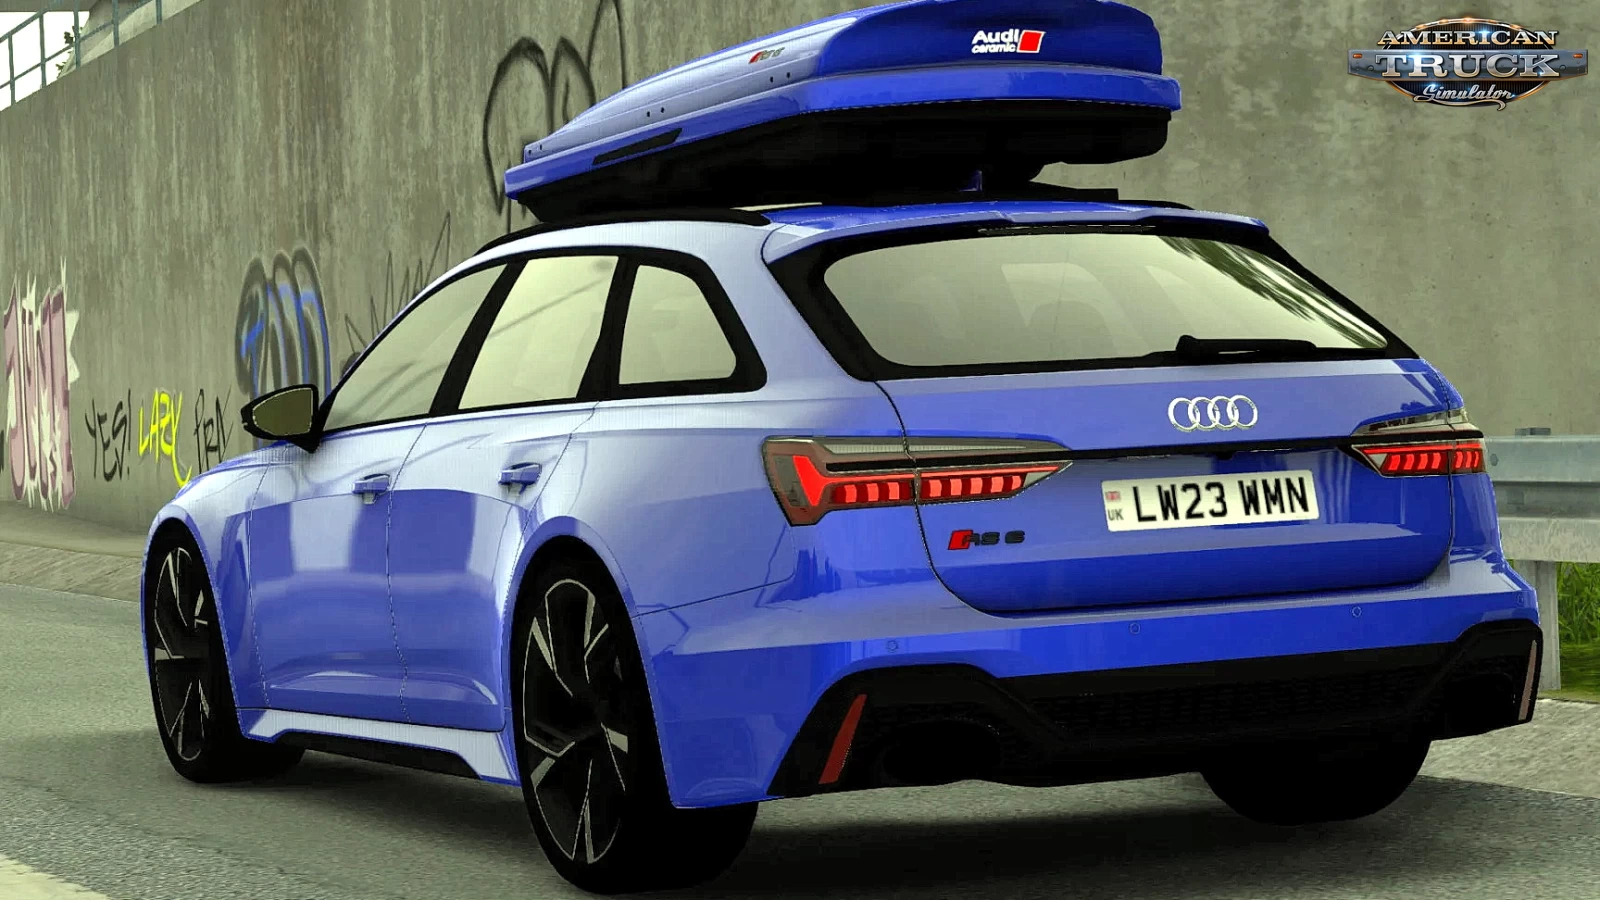 Audi RS6 Avant C8 2020 + Interior v1.0 (1.48.x) for ATS